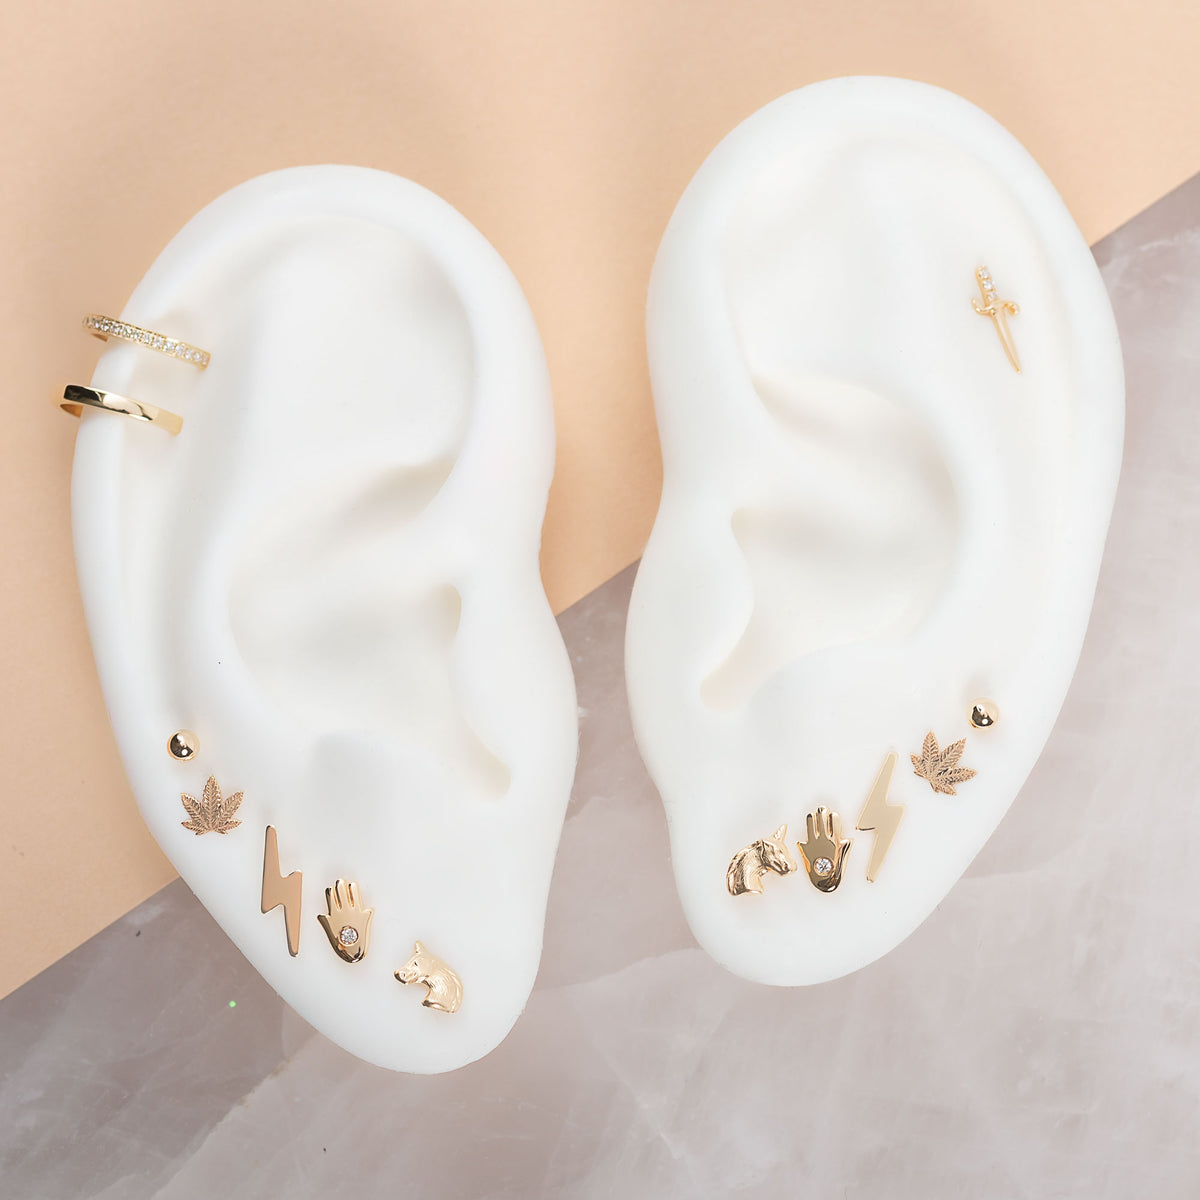 14k Gold Unicorn Stud Earrings